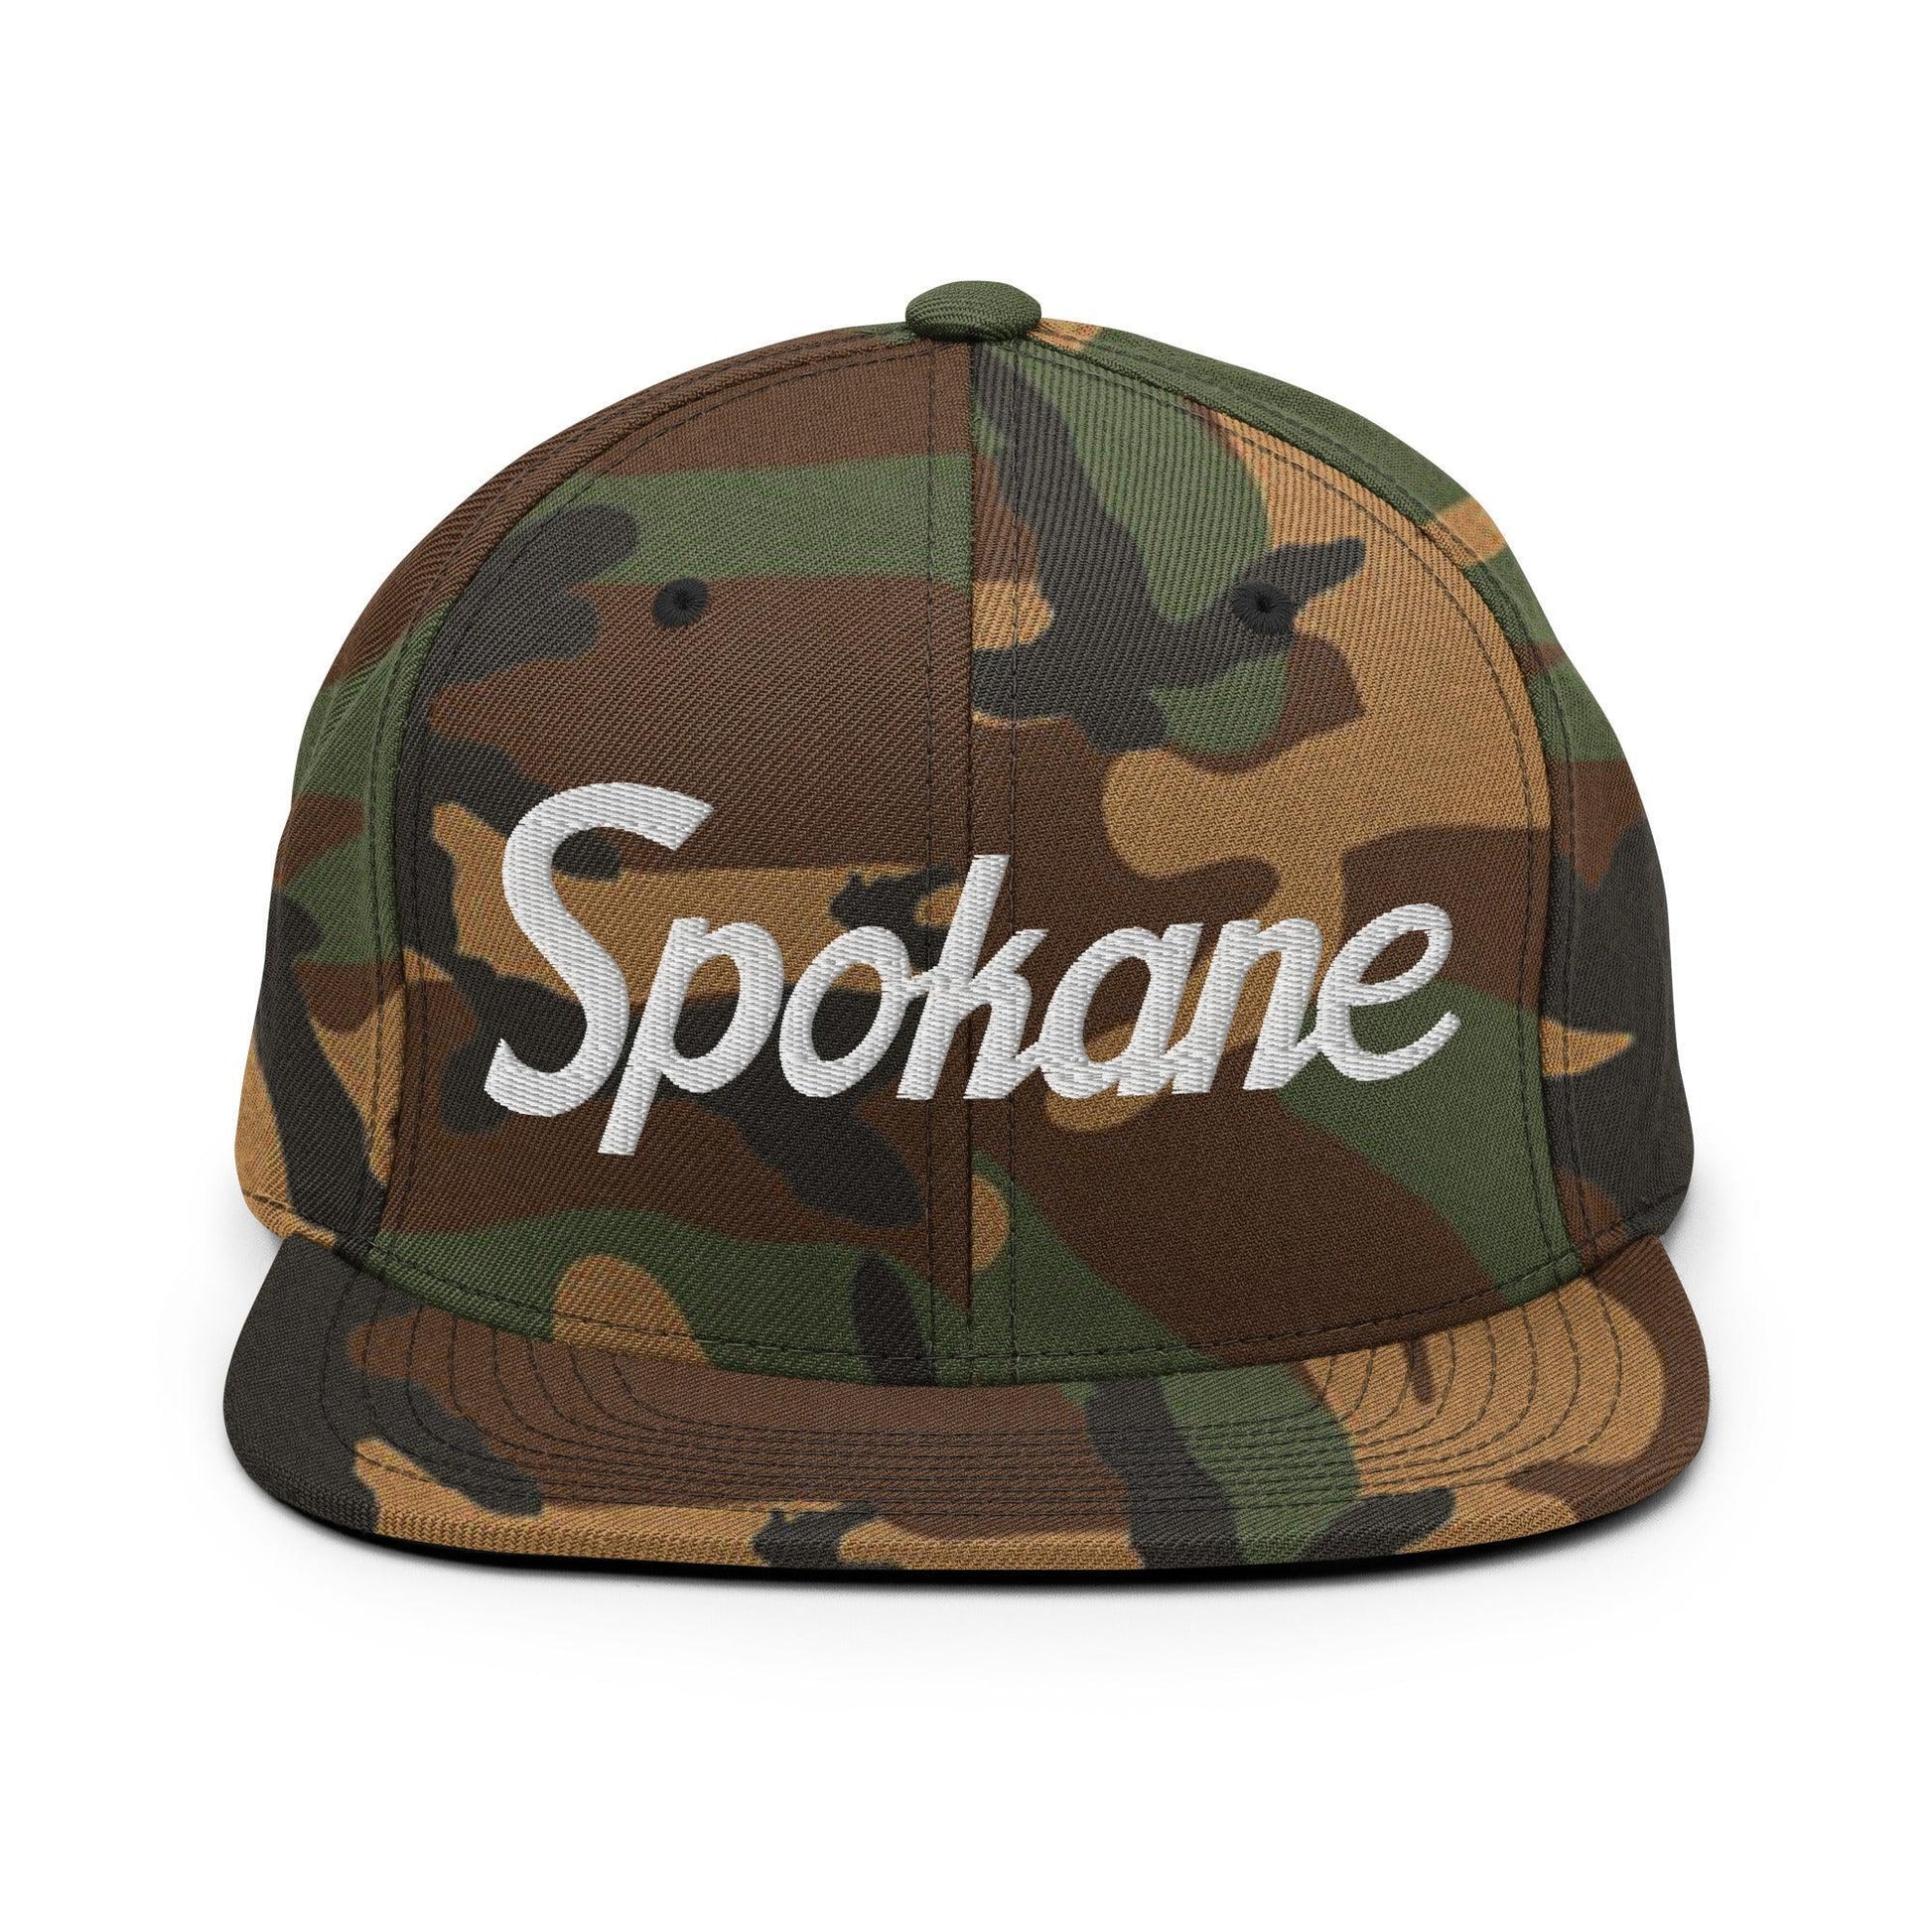 Spokane Script Snapback Hat Green Camo